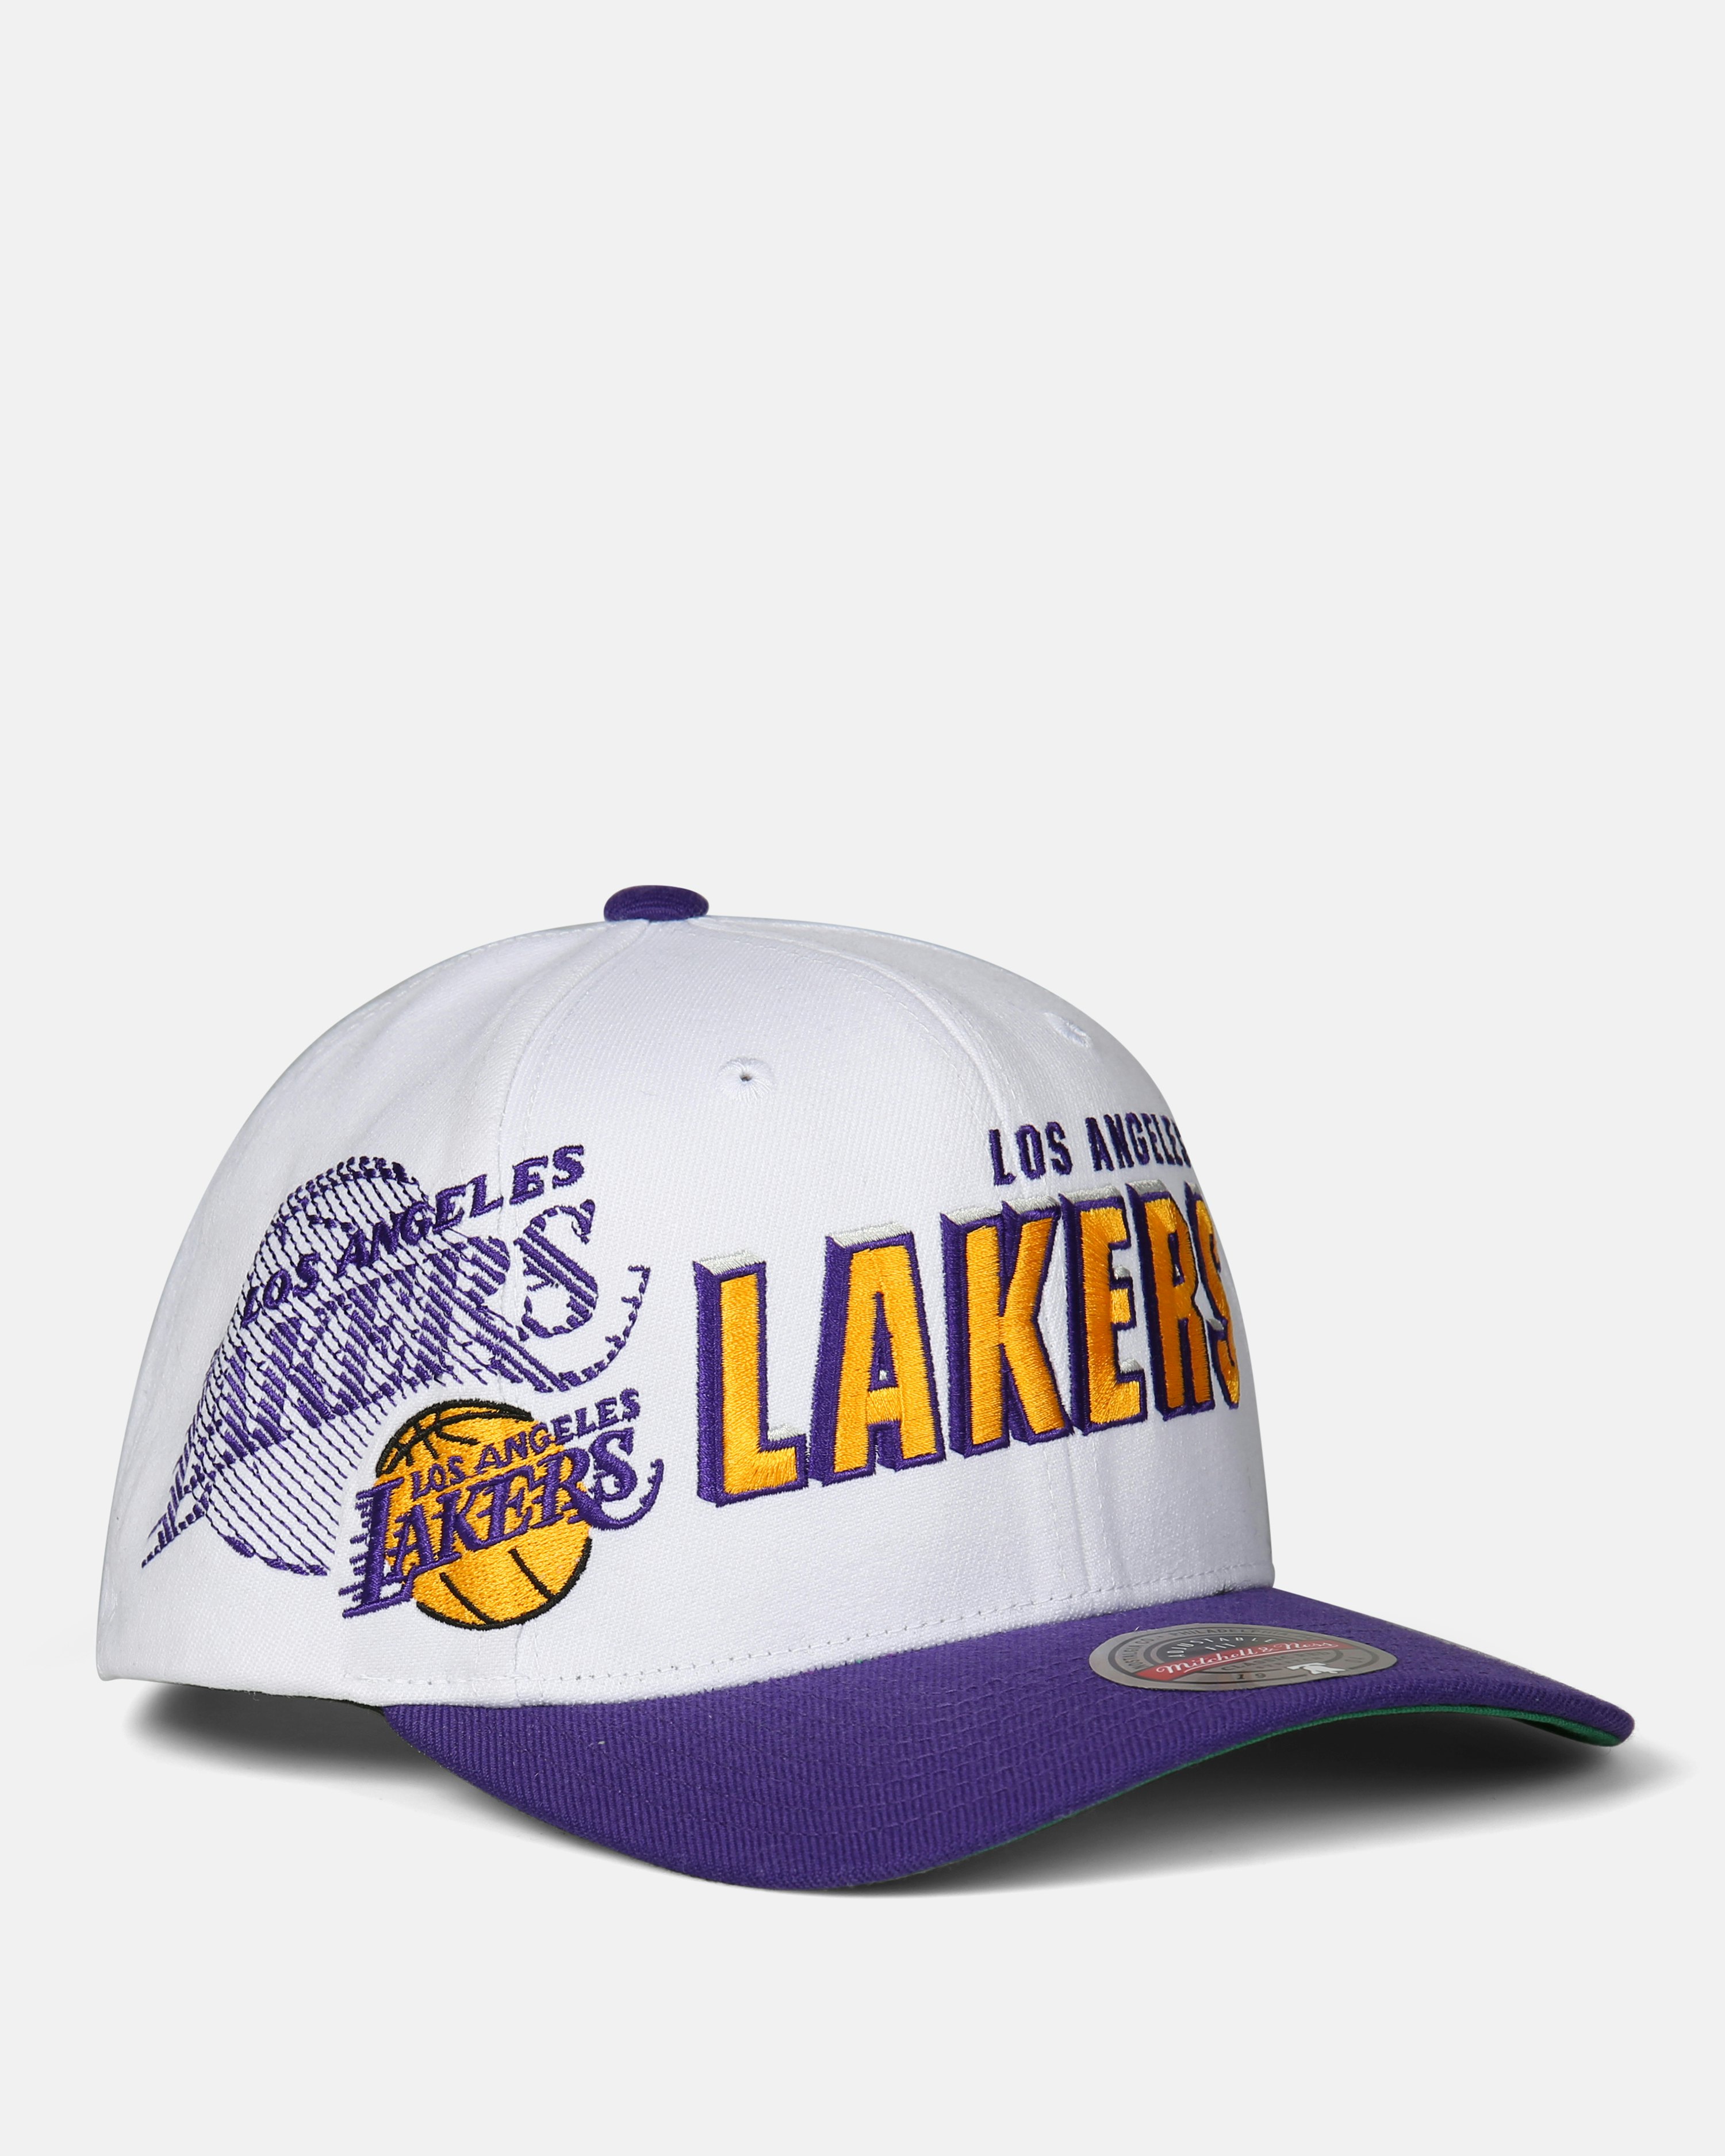 LA Clippers Draft Hats